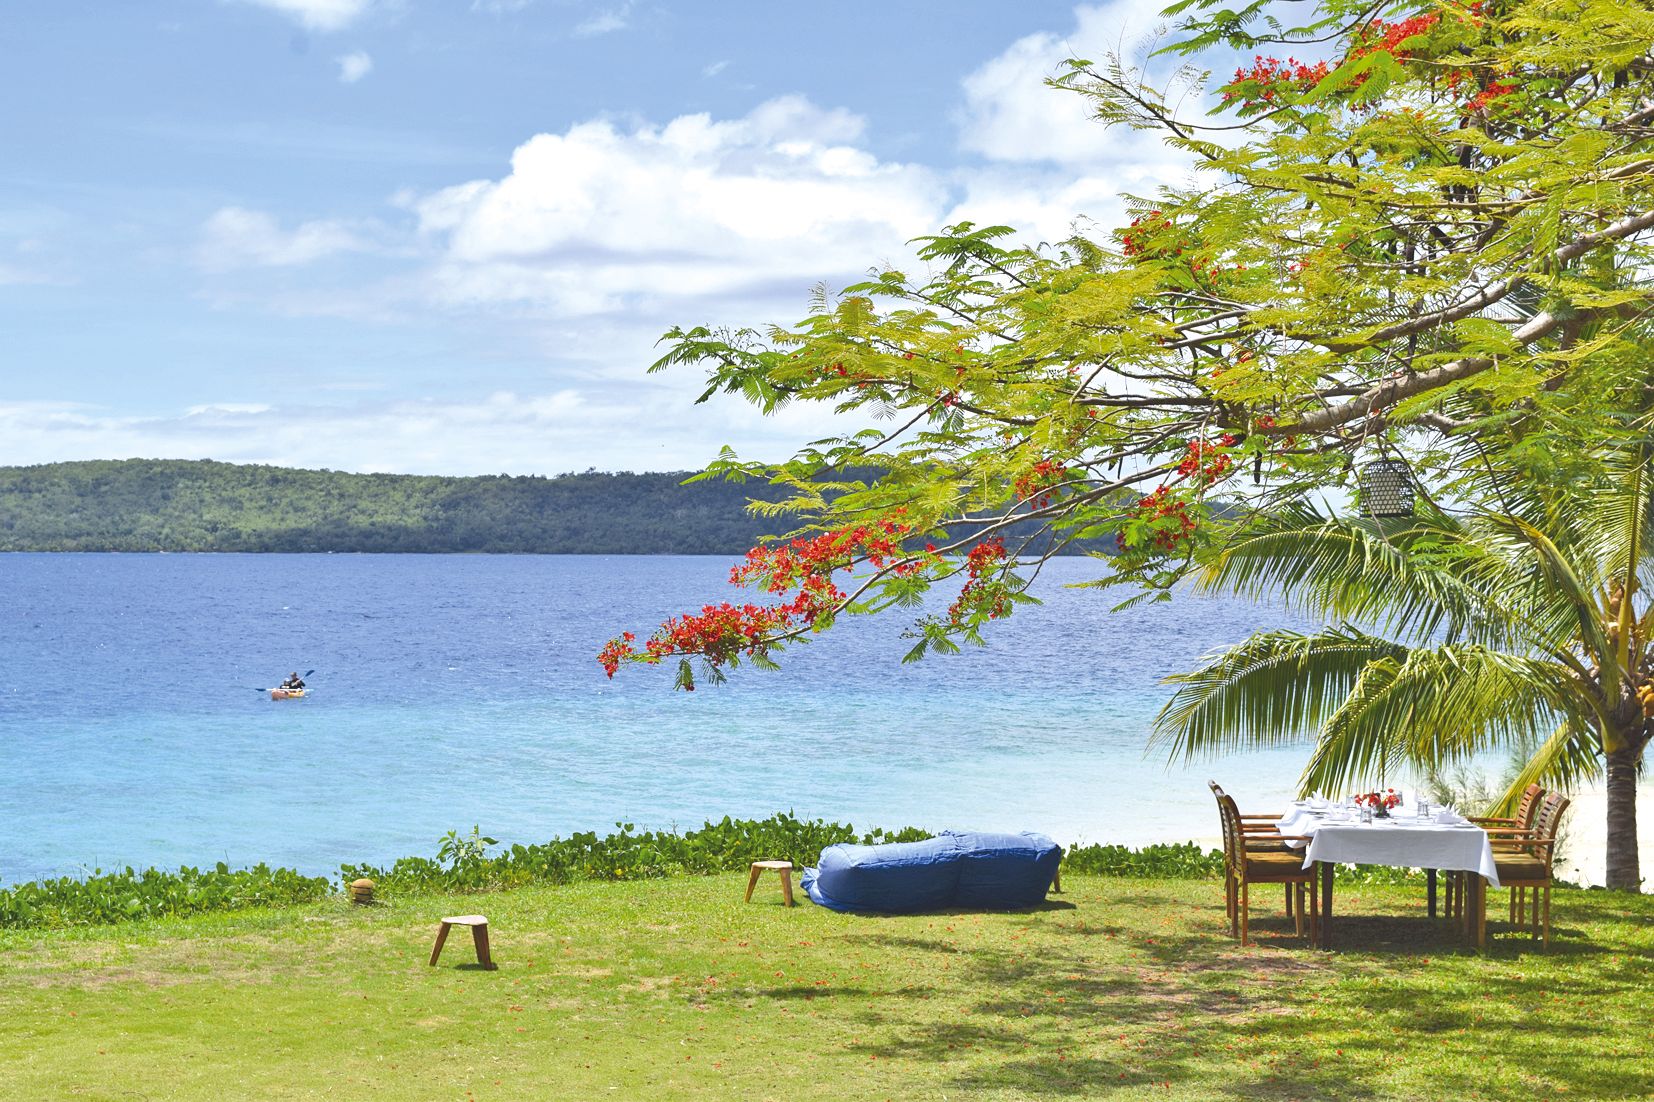 Le Havannah resort, sur la côte Ouest, offre une belle halte gastronomique à 40 minutes de Port-Vila.